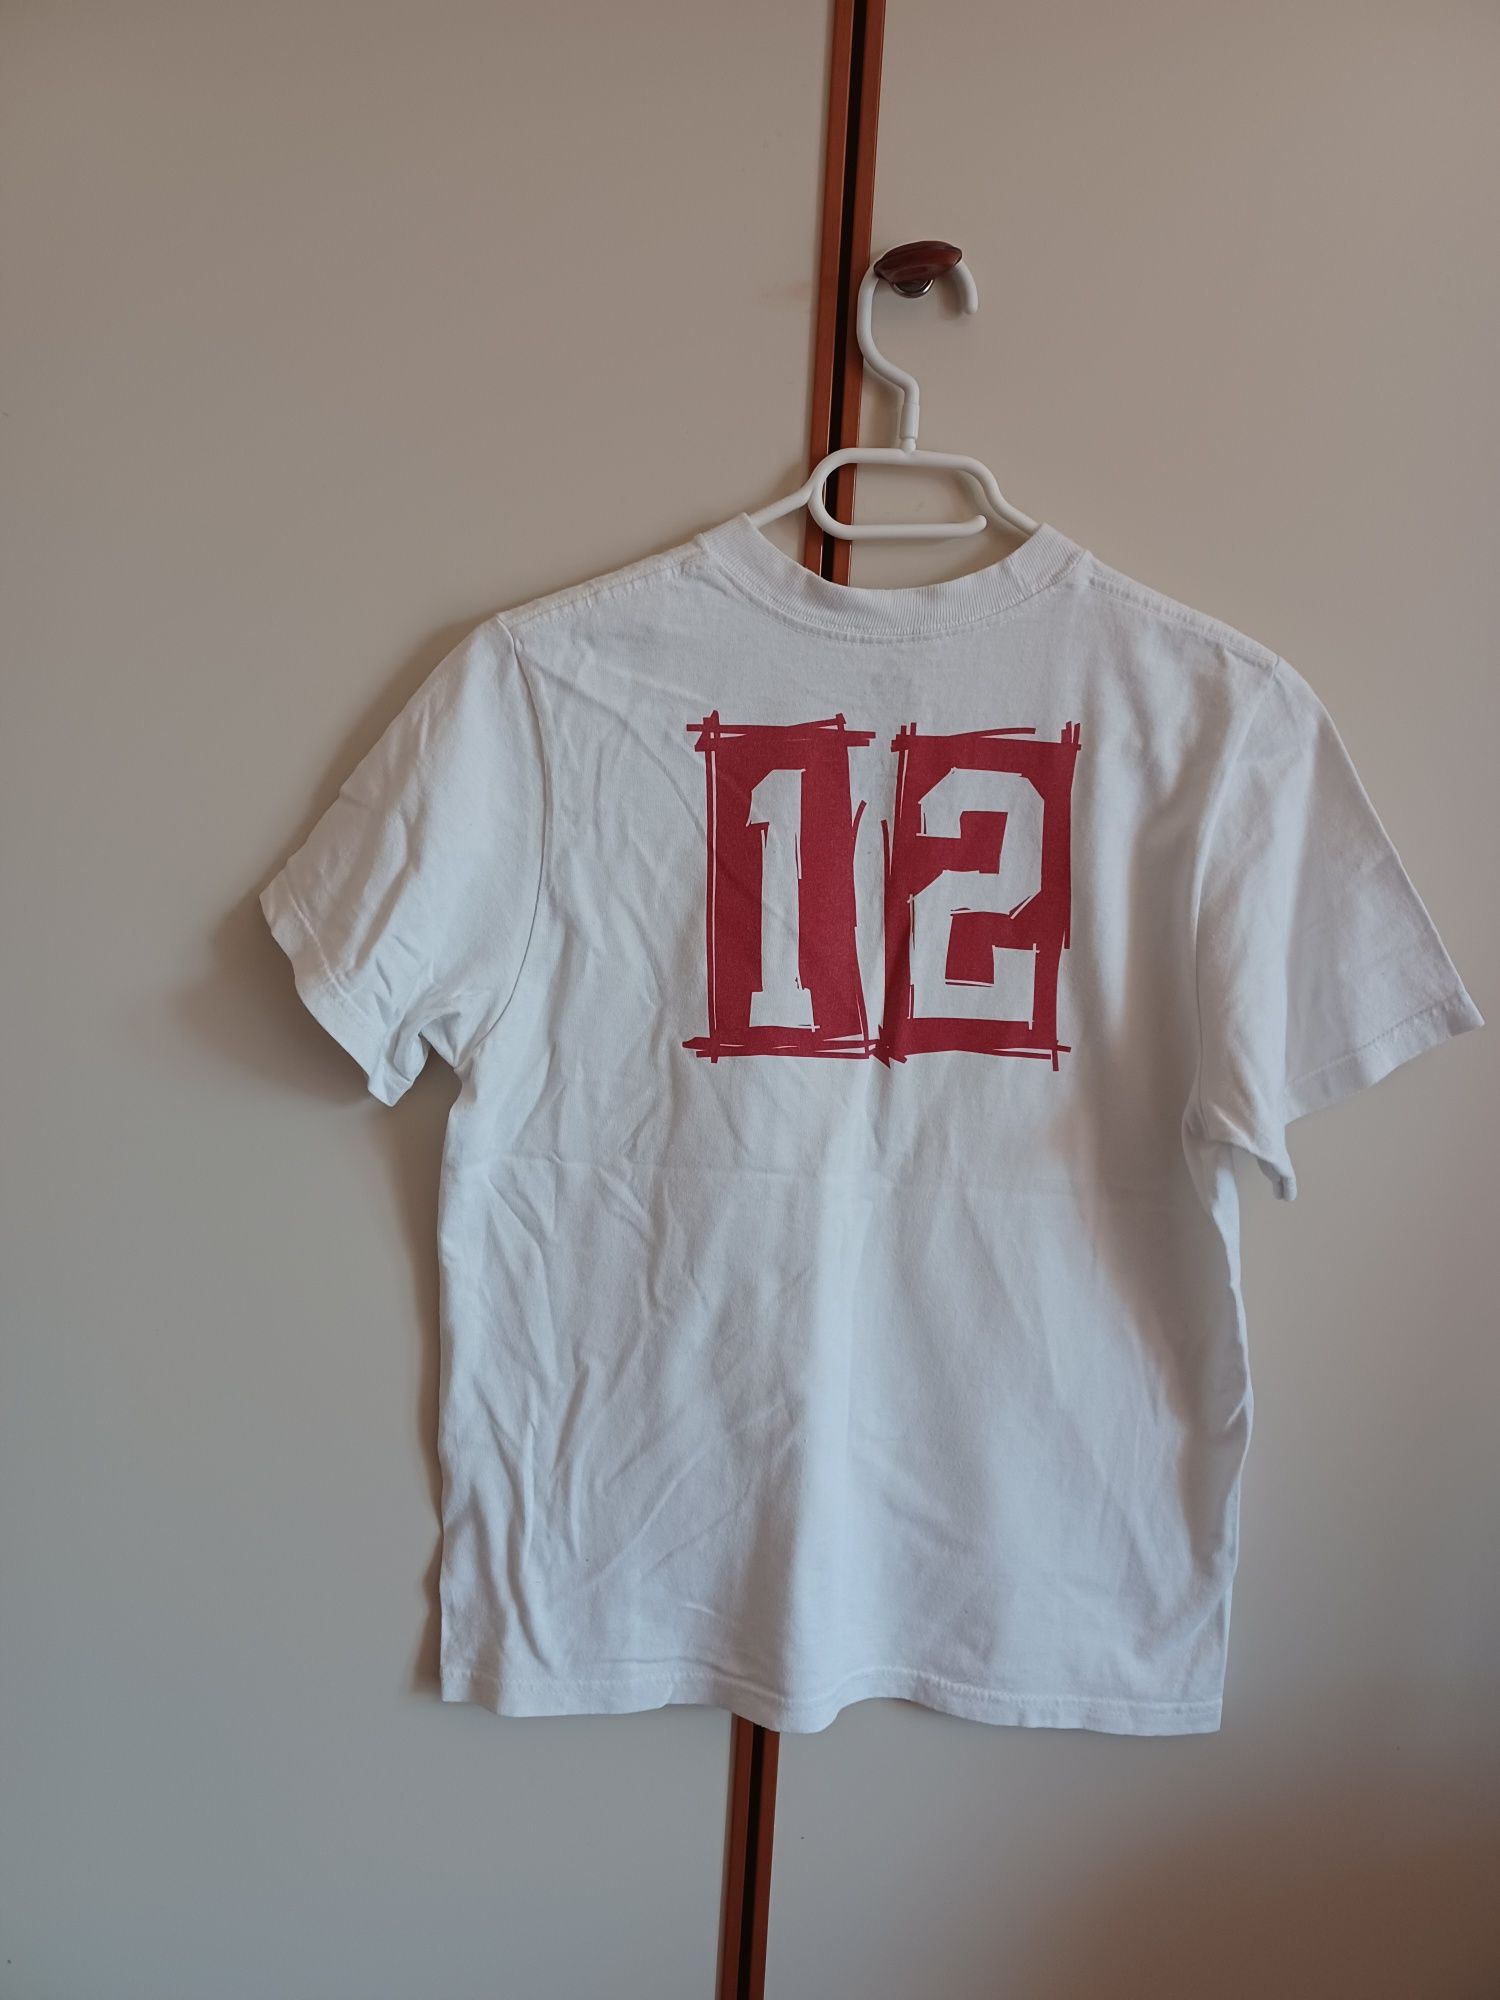 Koszulka Adidas dla chłopca na ok 140 cm, r. M